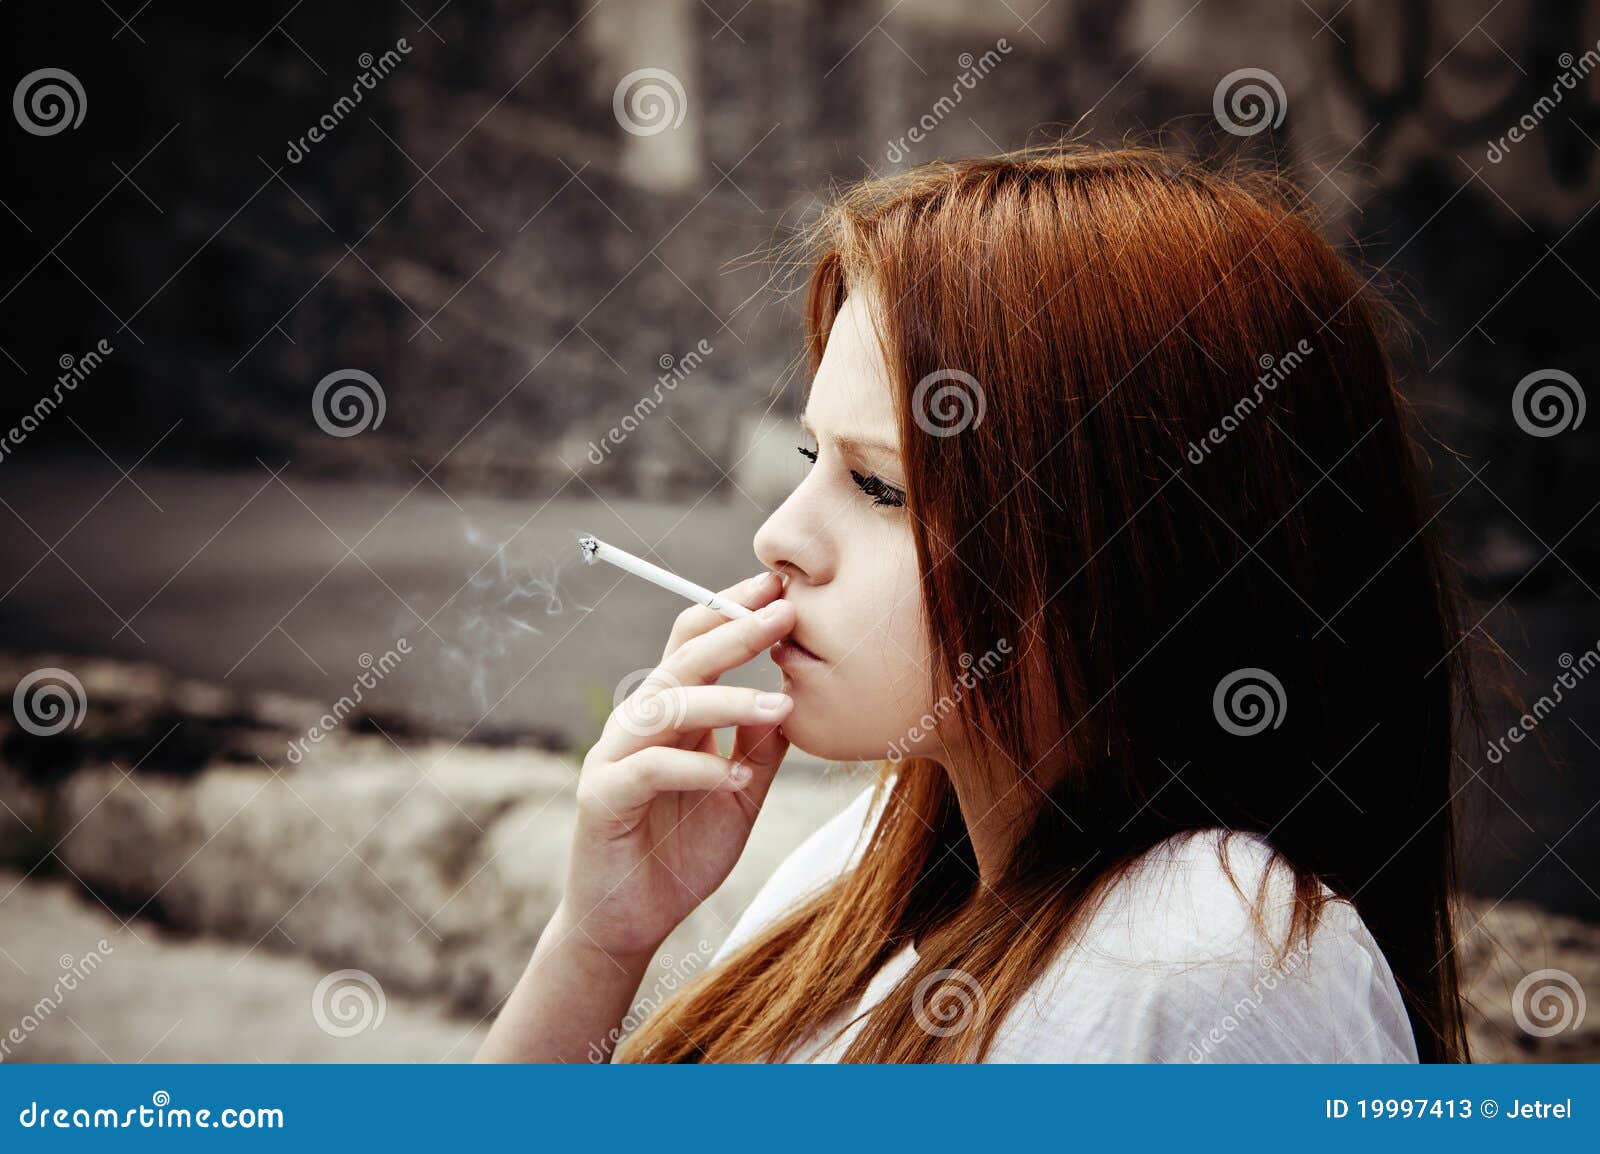 抽烟的女人，看起来很酷唯美桌面壁纸